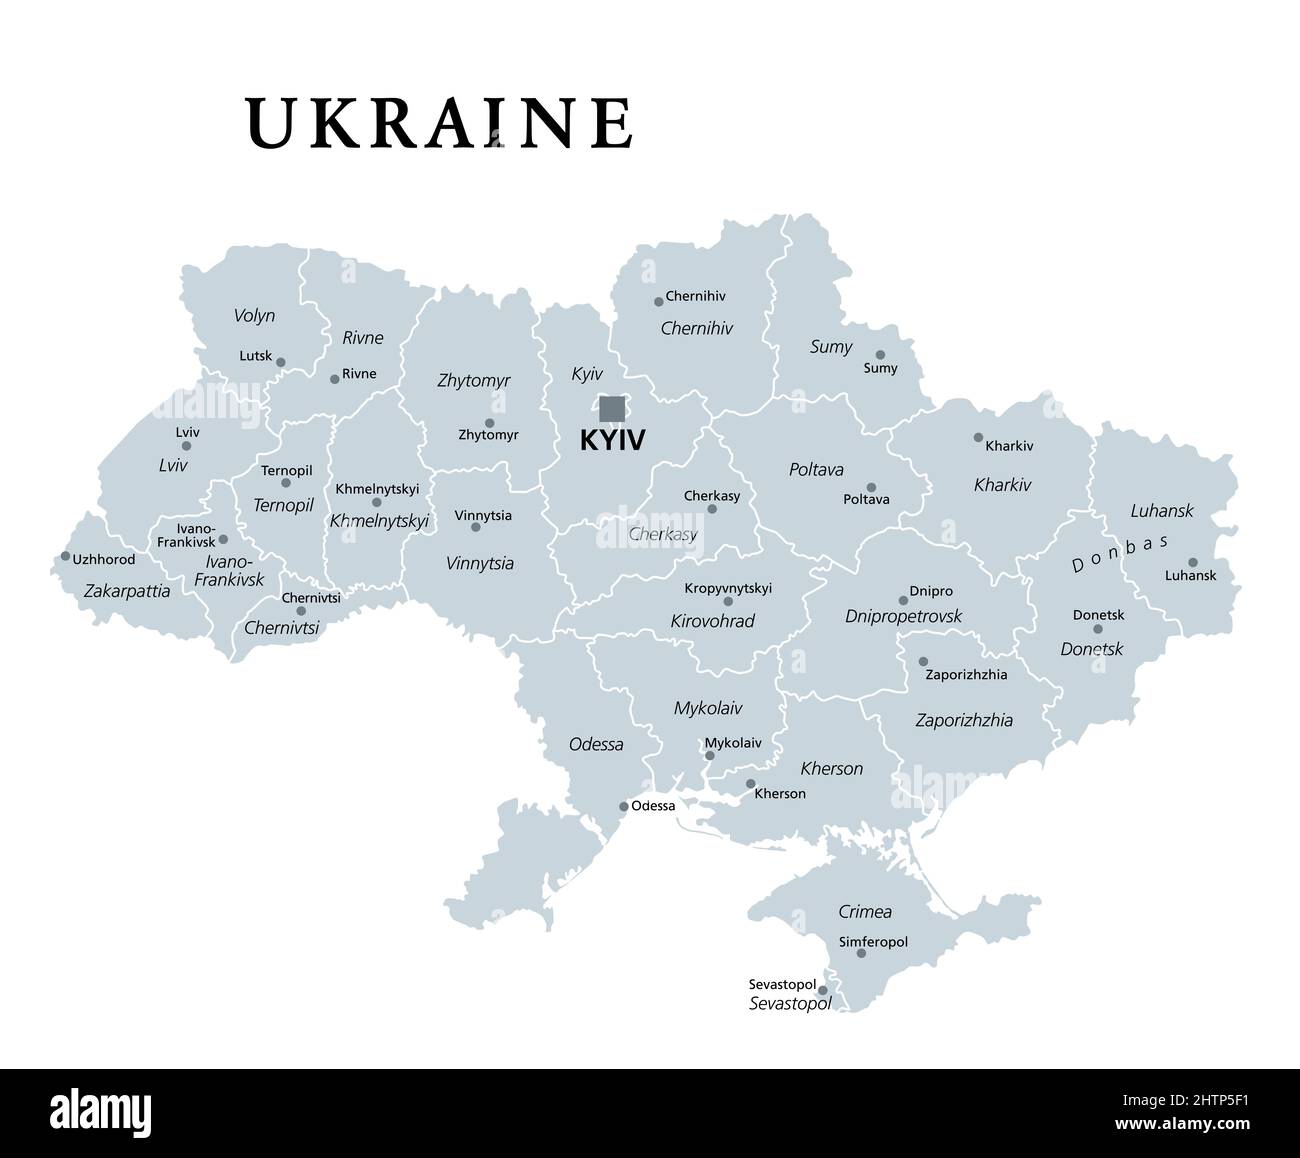 Ukraine, Landesunterteilung, graue politische Landkarte. Verwaltungsabteilungen der Ukraine mit Verwaltungszentren, einheitlicher Staat in Osteuropa. Stockfoto